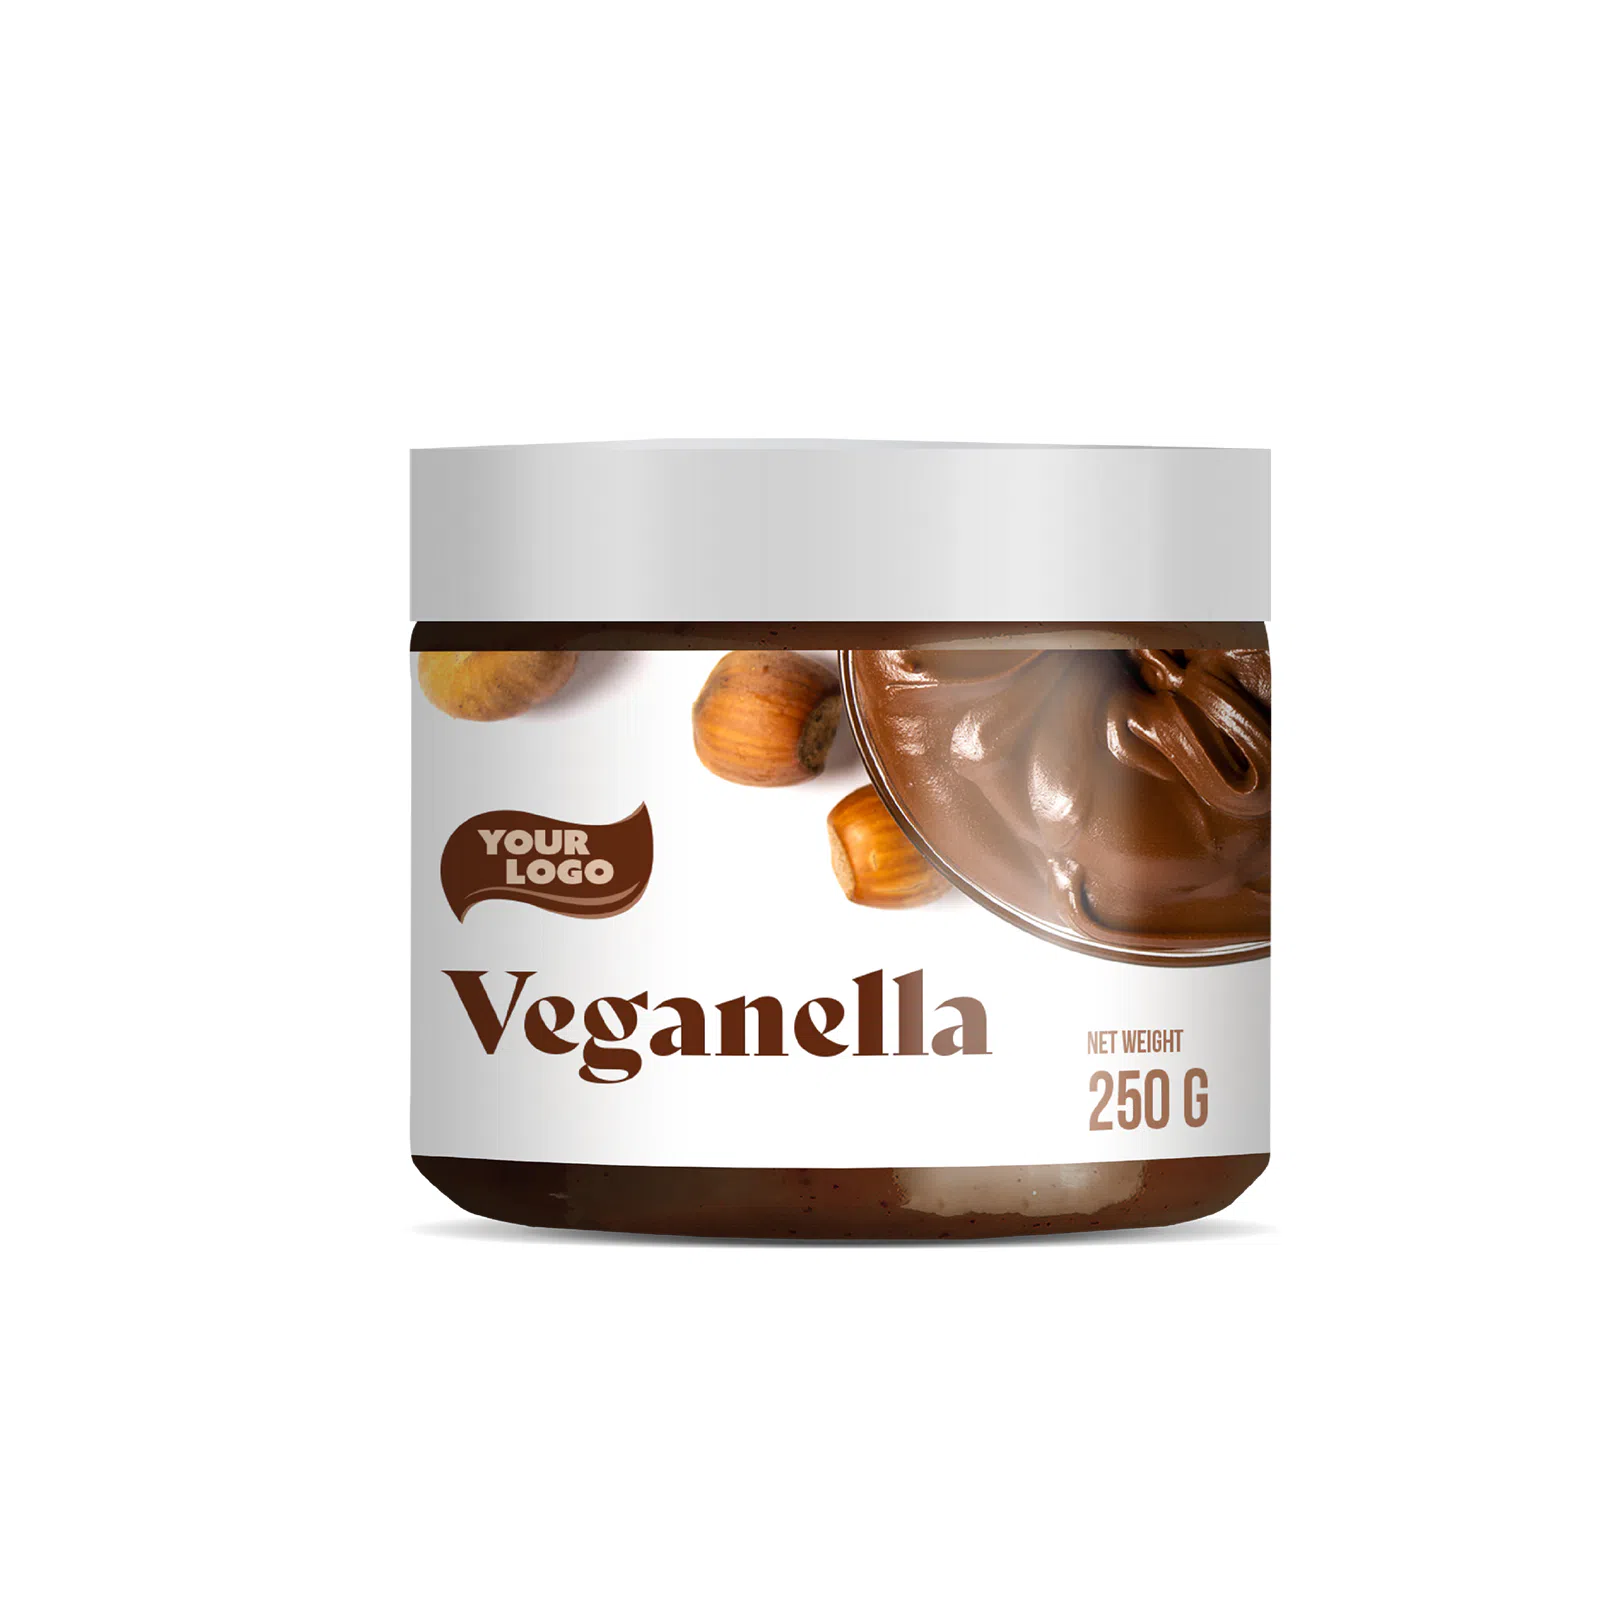 Private label amerpharma veganella spread in jar 250 g